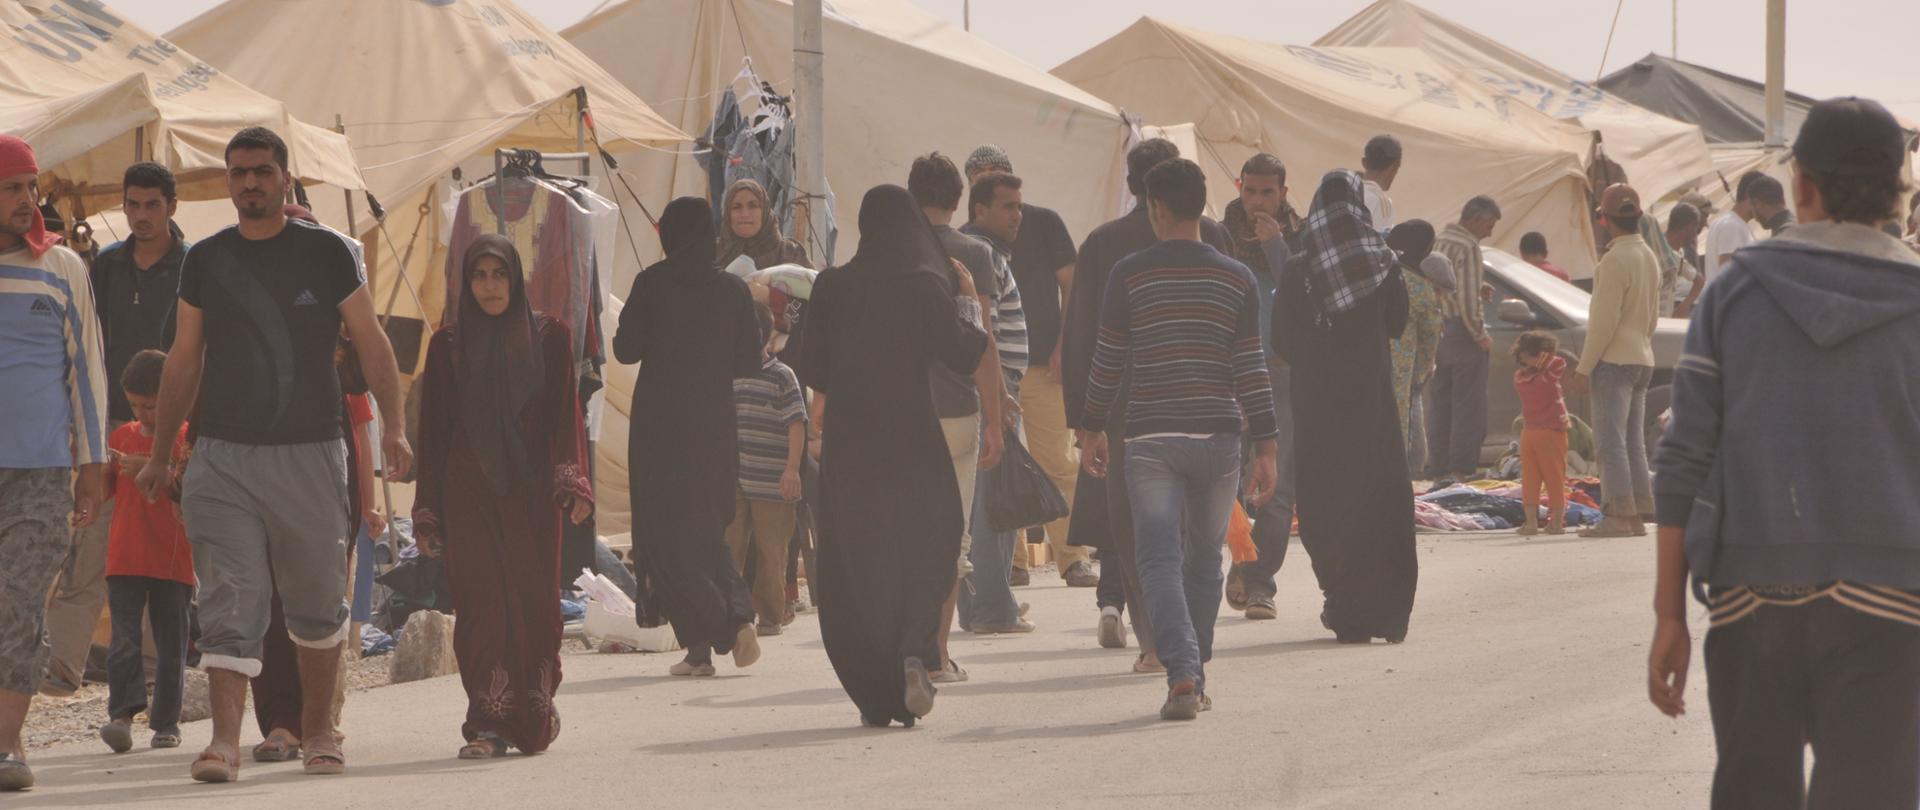 Ulica w obozie dla uchodźców, po której idą w różnych kierunkach kobiety w strojach muzułmańskich, dzieci i mężczyźni. Wzdłuż ulicy ustawione są namioty w kolorze beżowym.